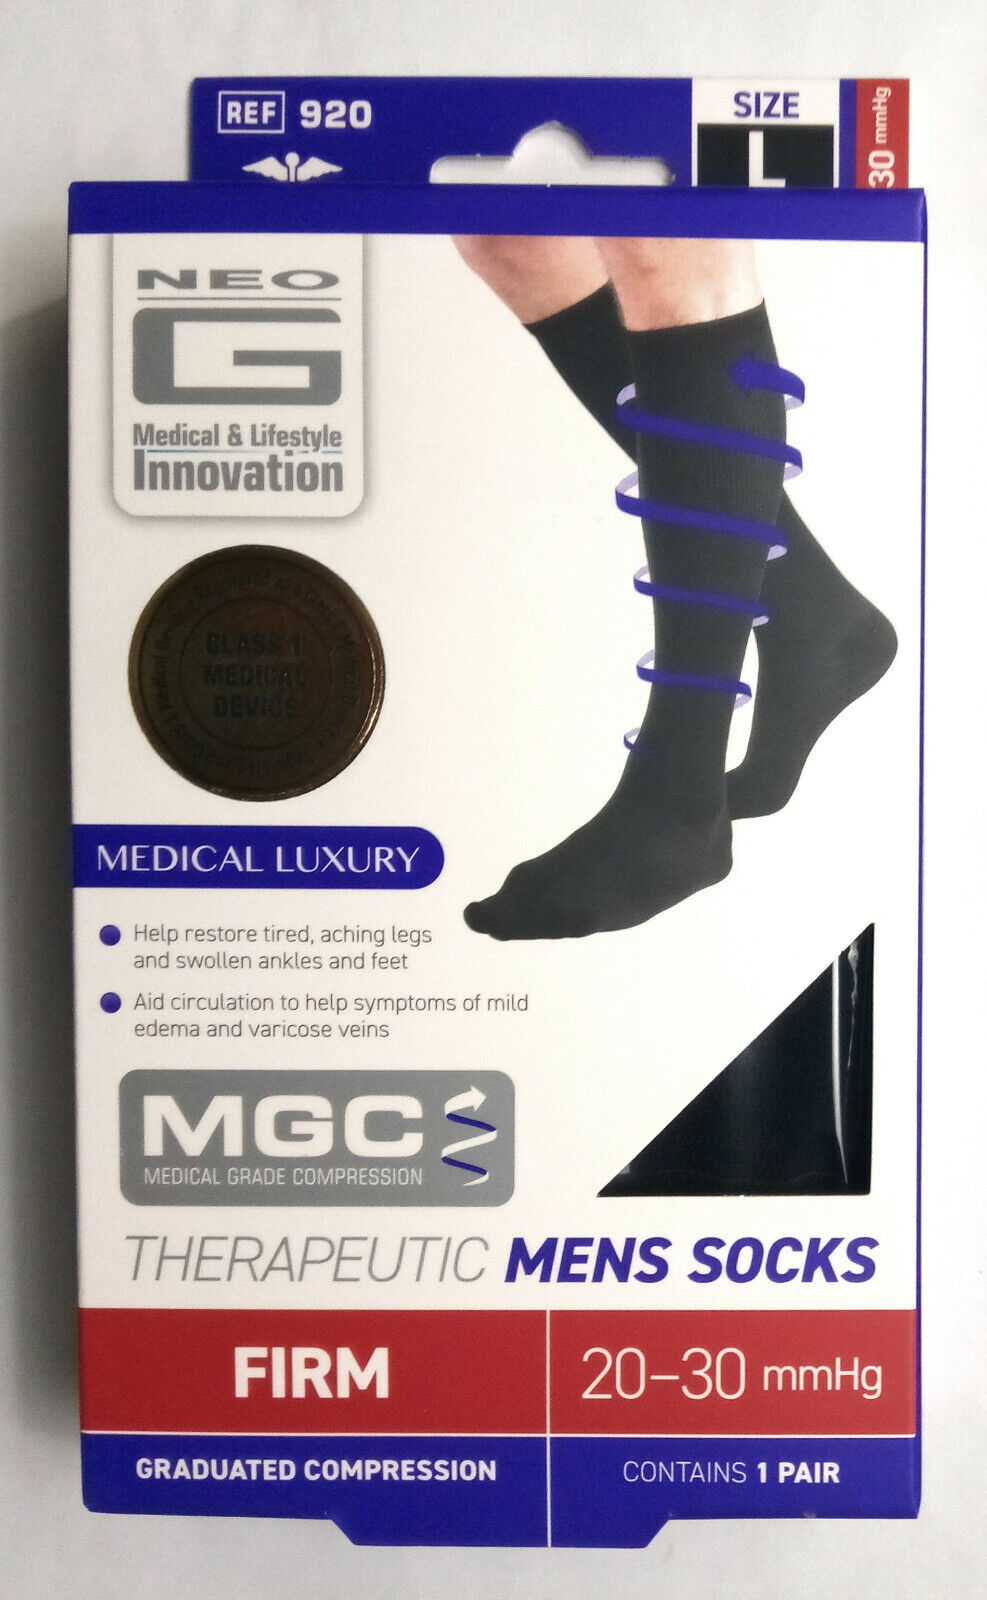 Neo G Therapeutic Men's Compression Socks, 20-30 mmHg, Size L, Black